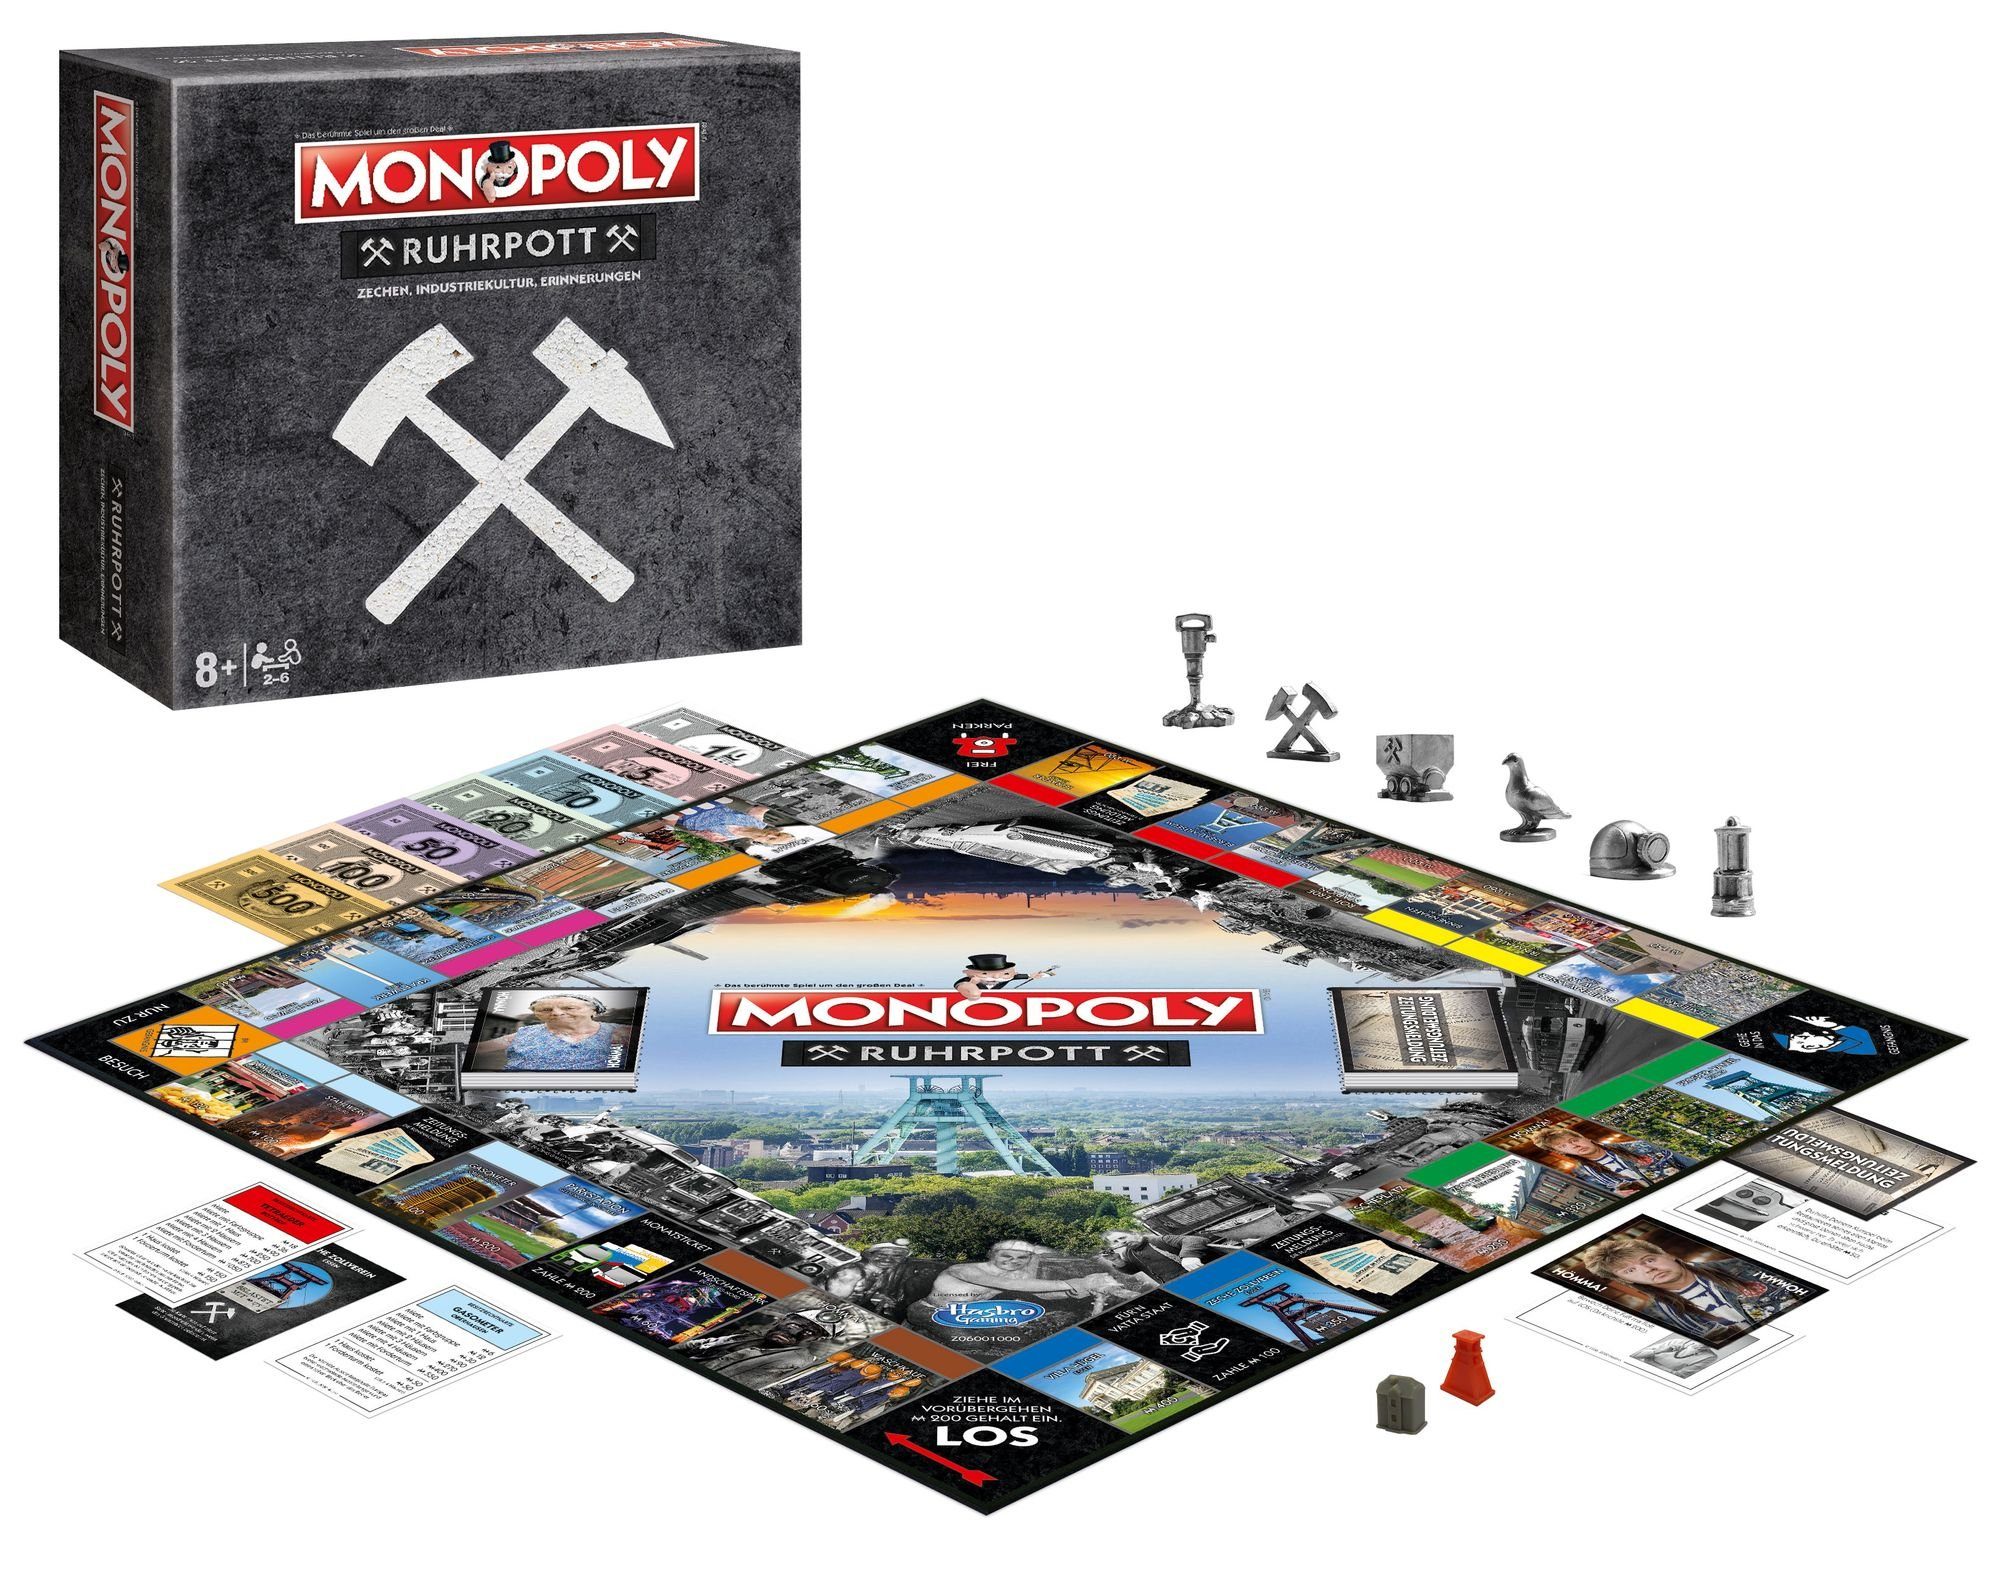 inkl. Moves Monopoly Spiel, Winning Zechen Ruhrpott Brettspiel Quartettspiel